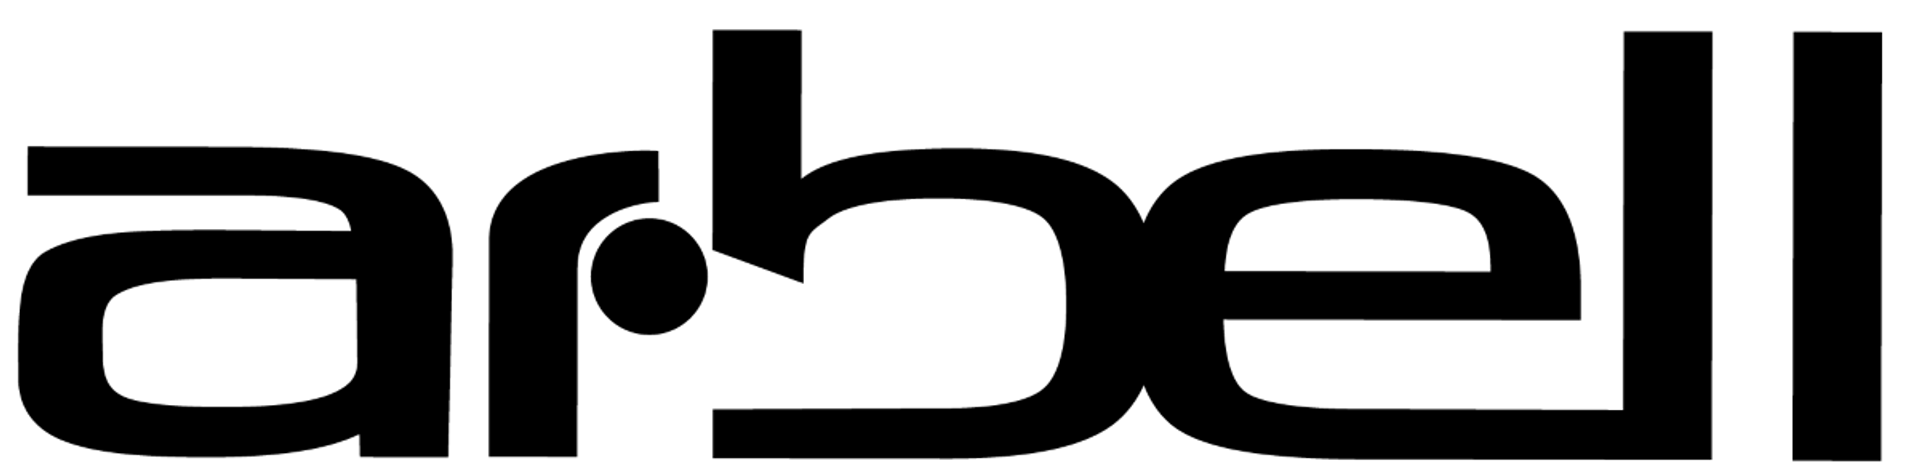 ARBELL logo